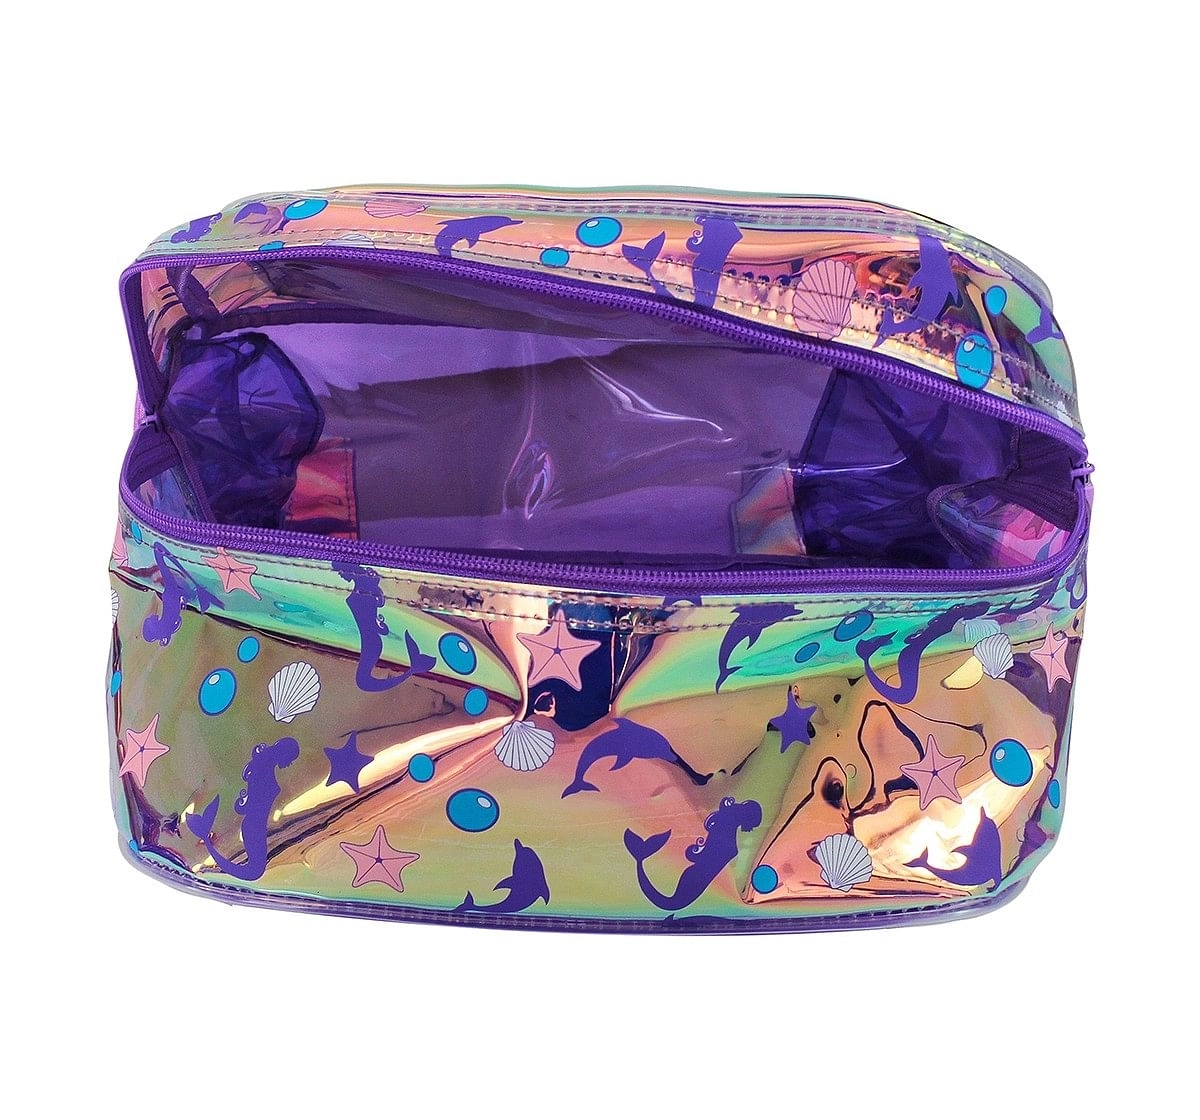 Hamster London Big Mermaid Backpack for age 3Y+ (Purple)